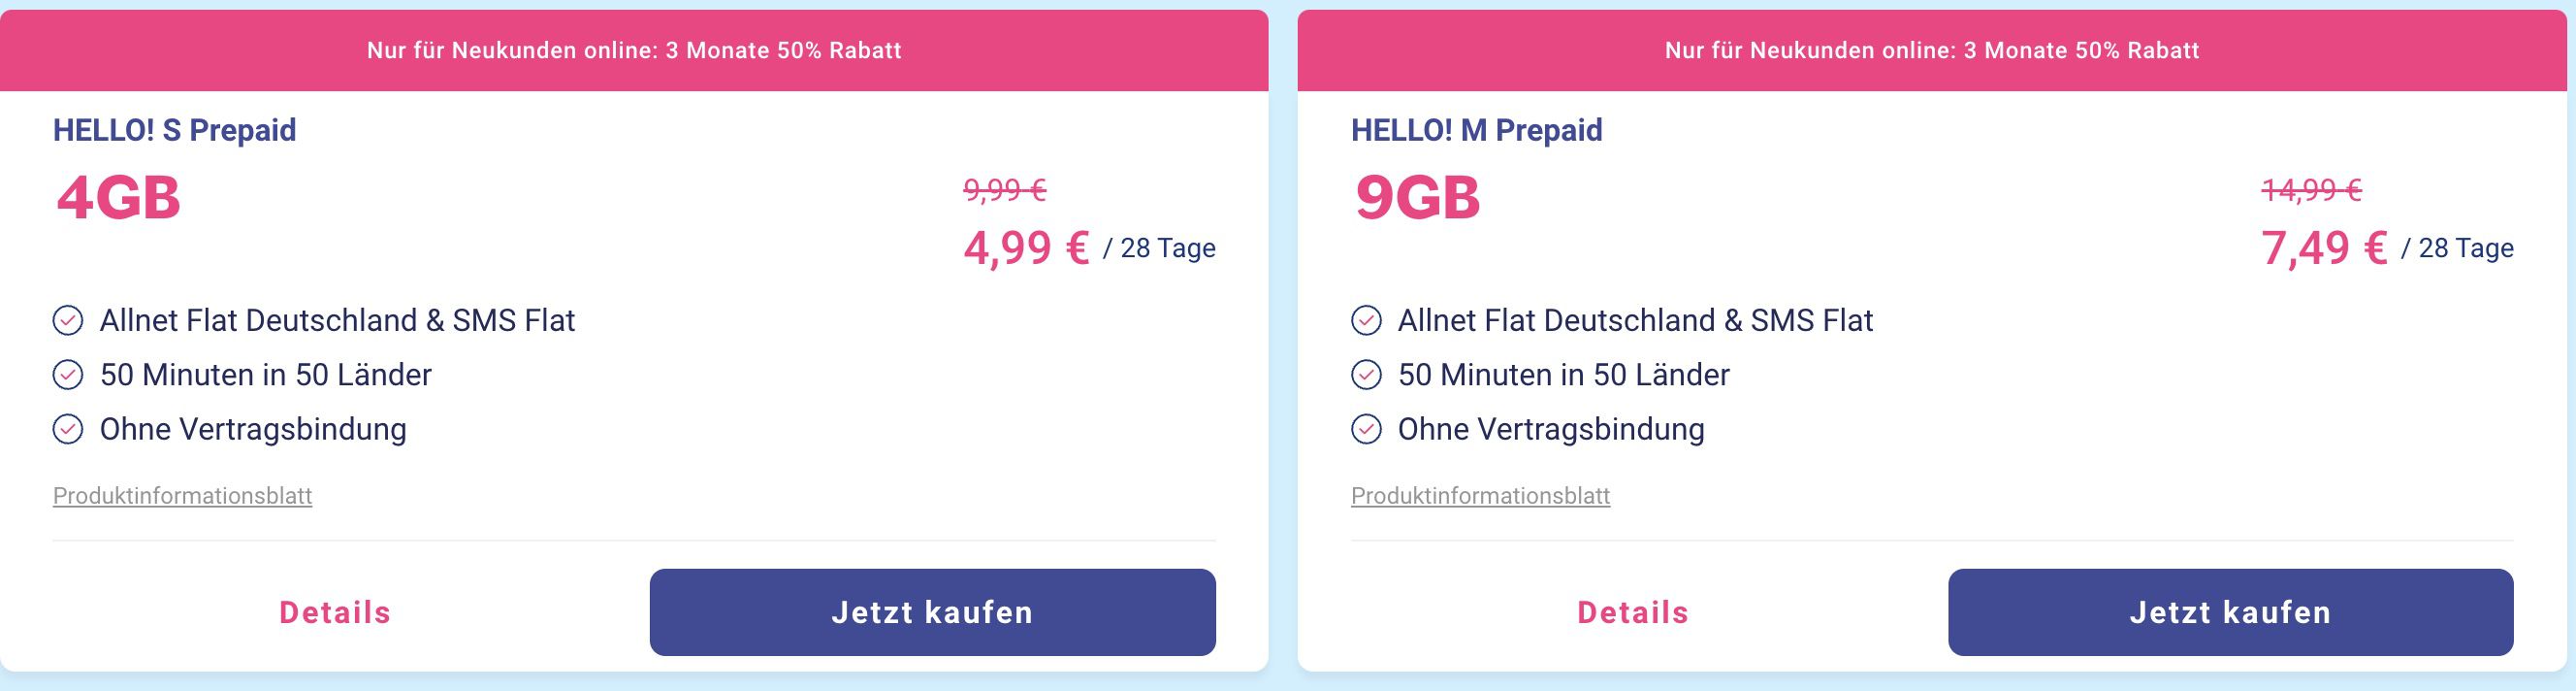 LTE 9GB mit Allnet-Flat z.B. im Prepaid-Tarife Lebara Rabatt o2 7,49€ - Netz auf 50%